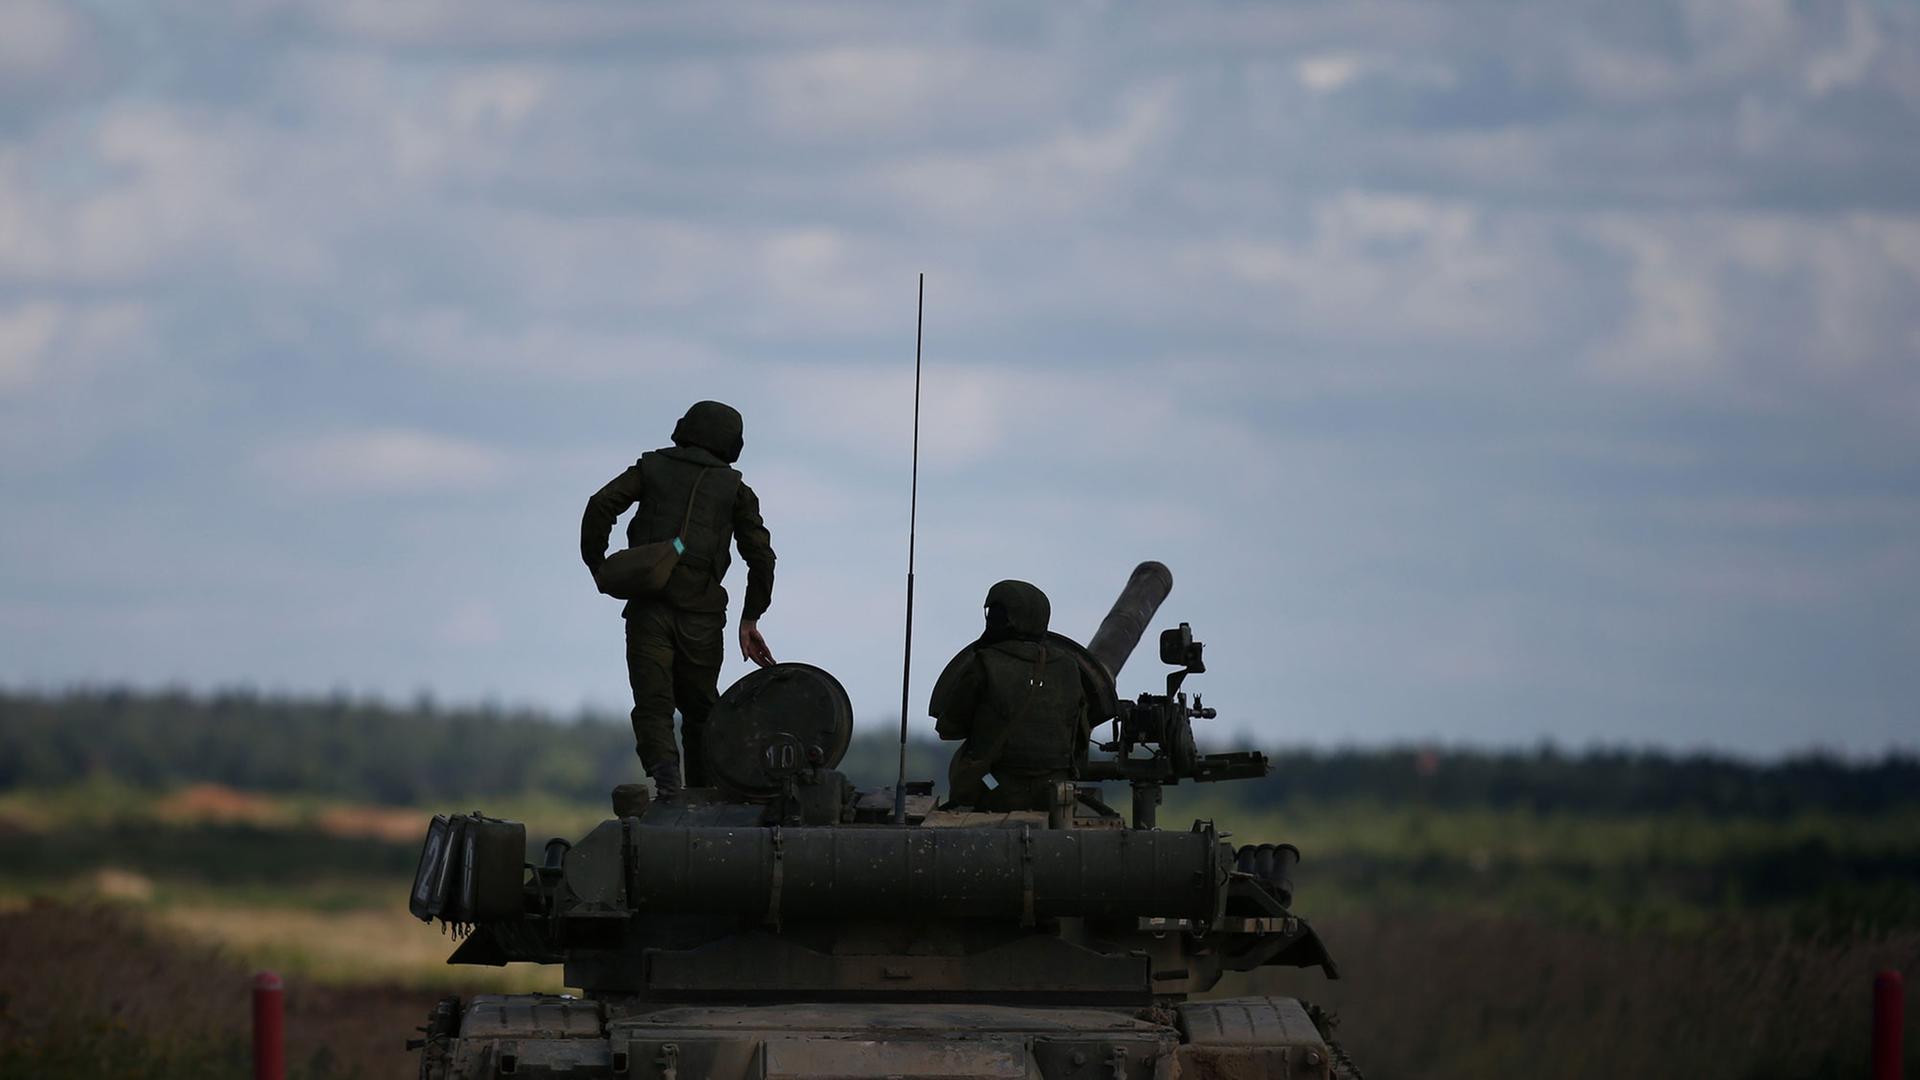 Man sieht im Gegenlicht zwei Soldaten auf dem Panzer, der in einem Feld unter Wolkenhimmel steht.